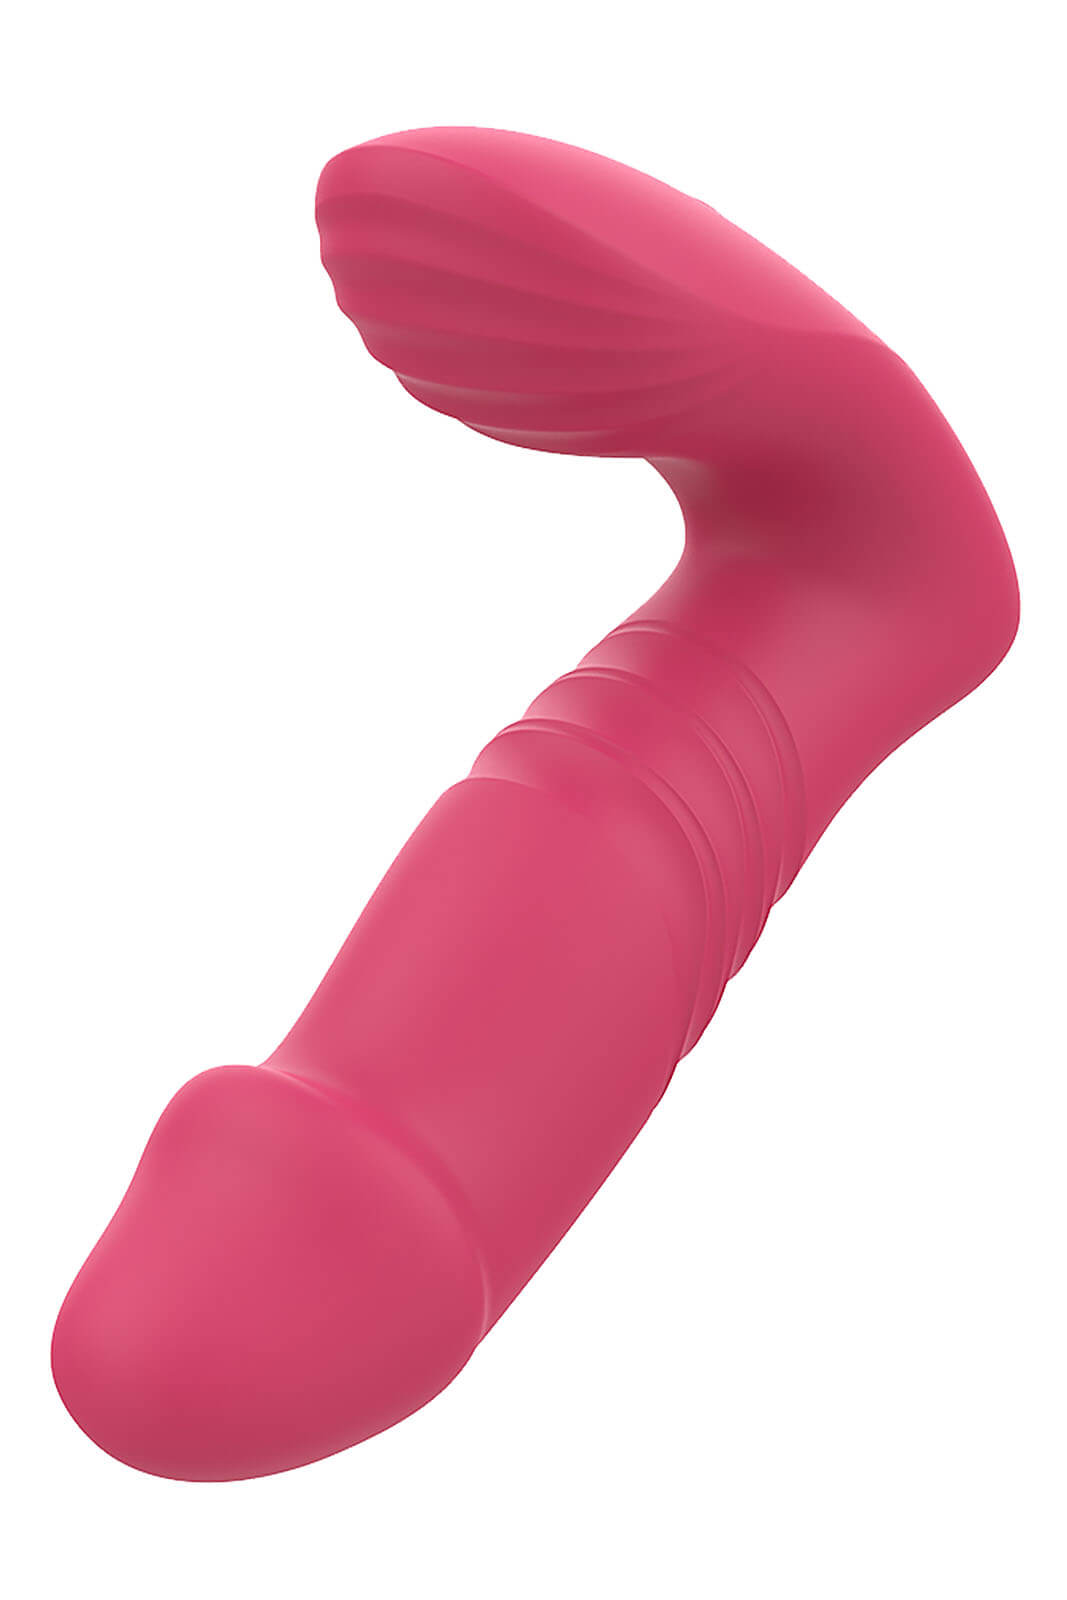 Dream Toys Essentials Up & Down (Pink), dvojitý vibrátor s ovladačem